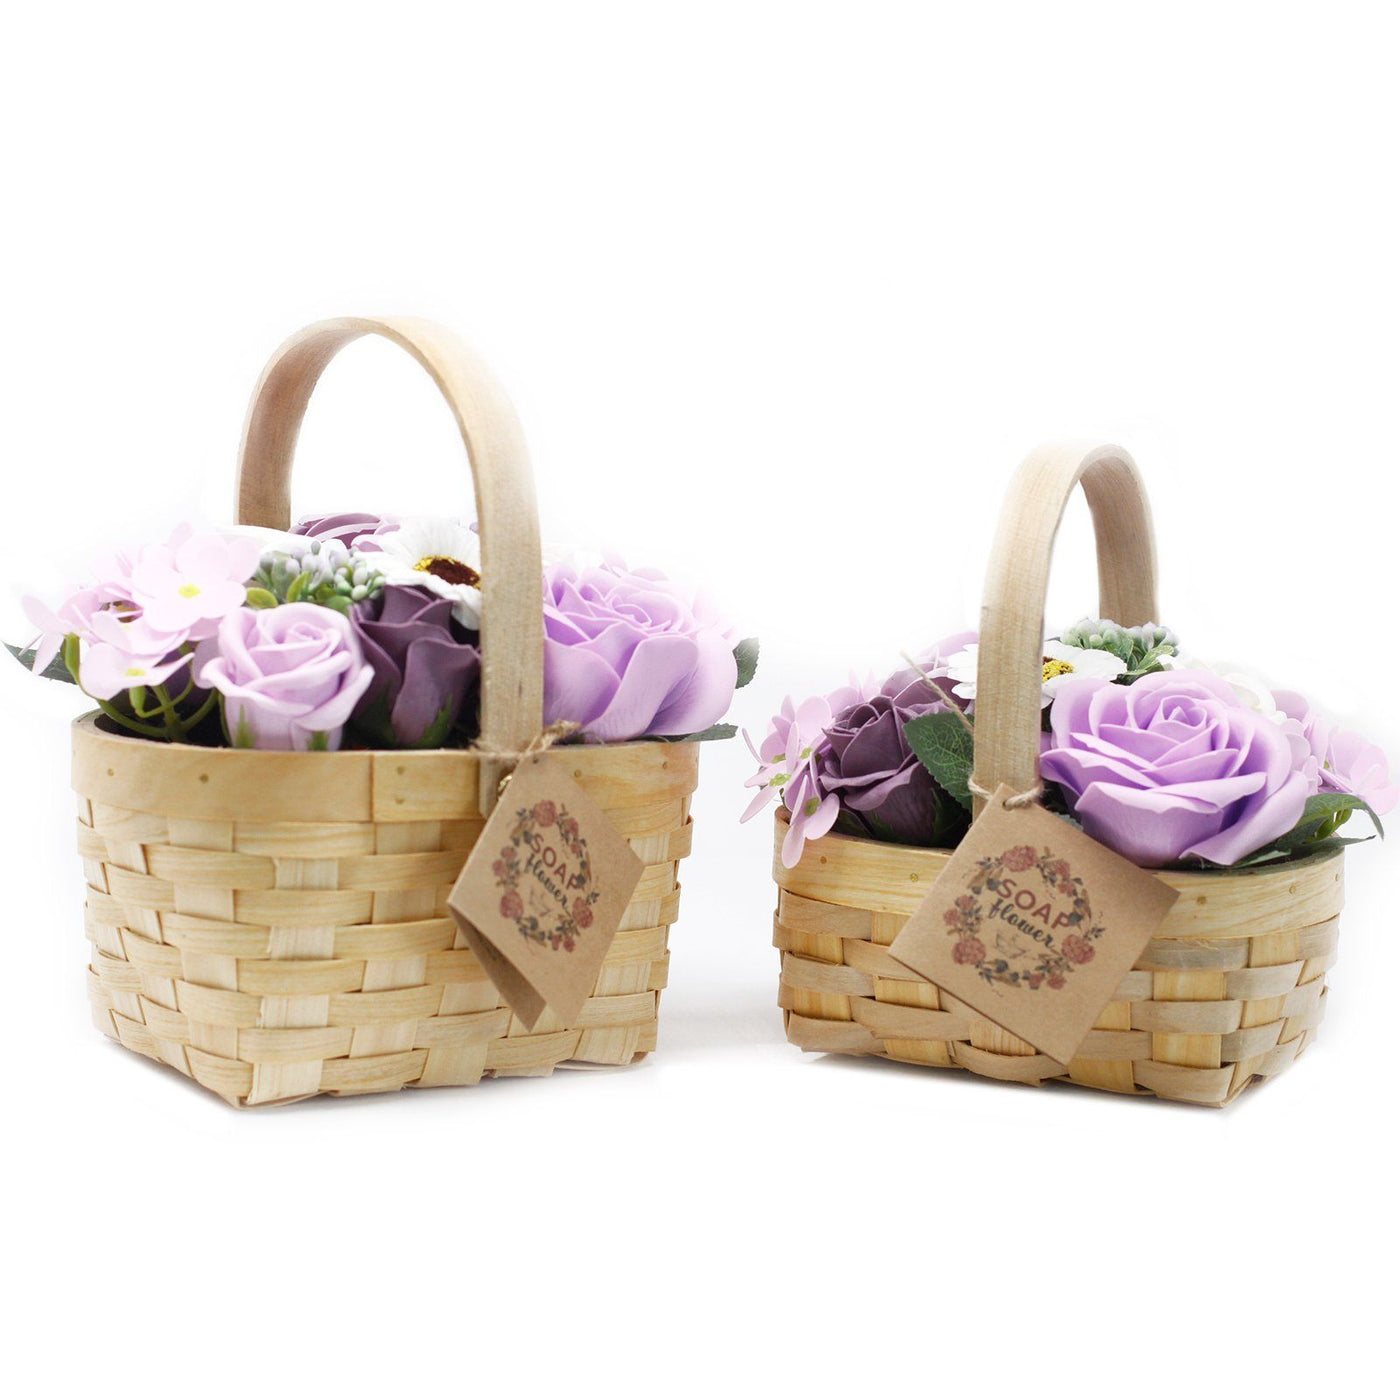 Medium Pink Fragranced Body Soap Flowers Bouquet In Wicker Gift Basket.